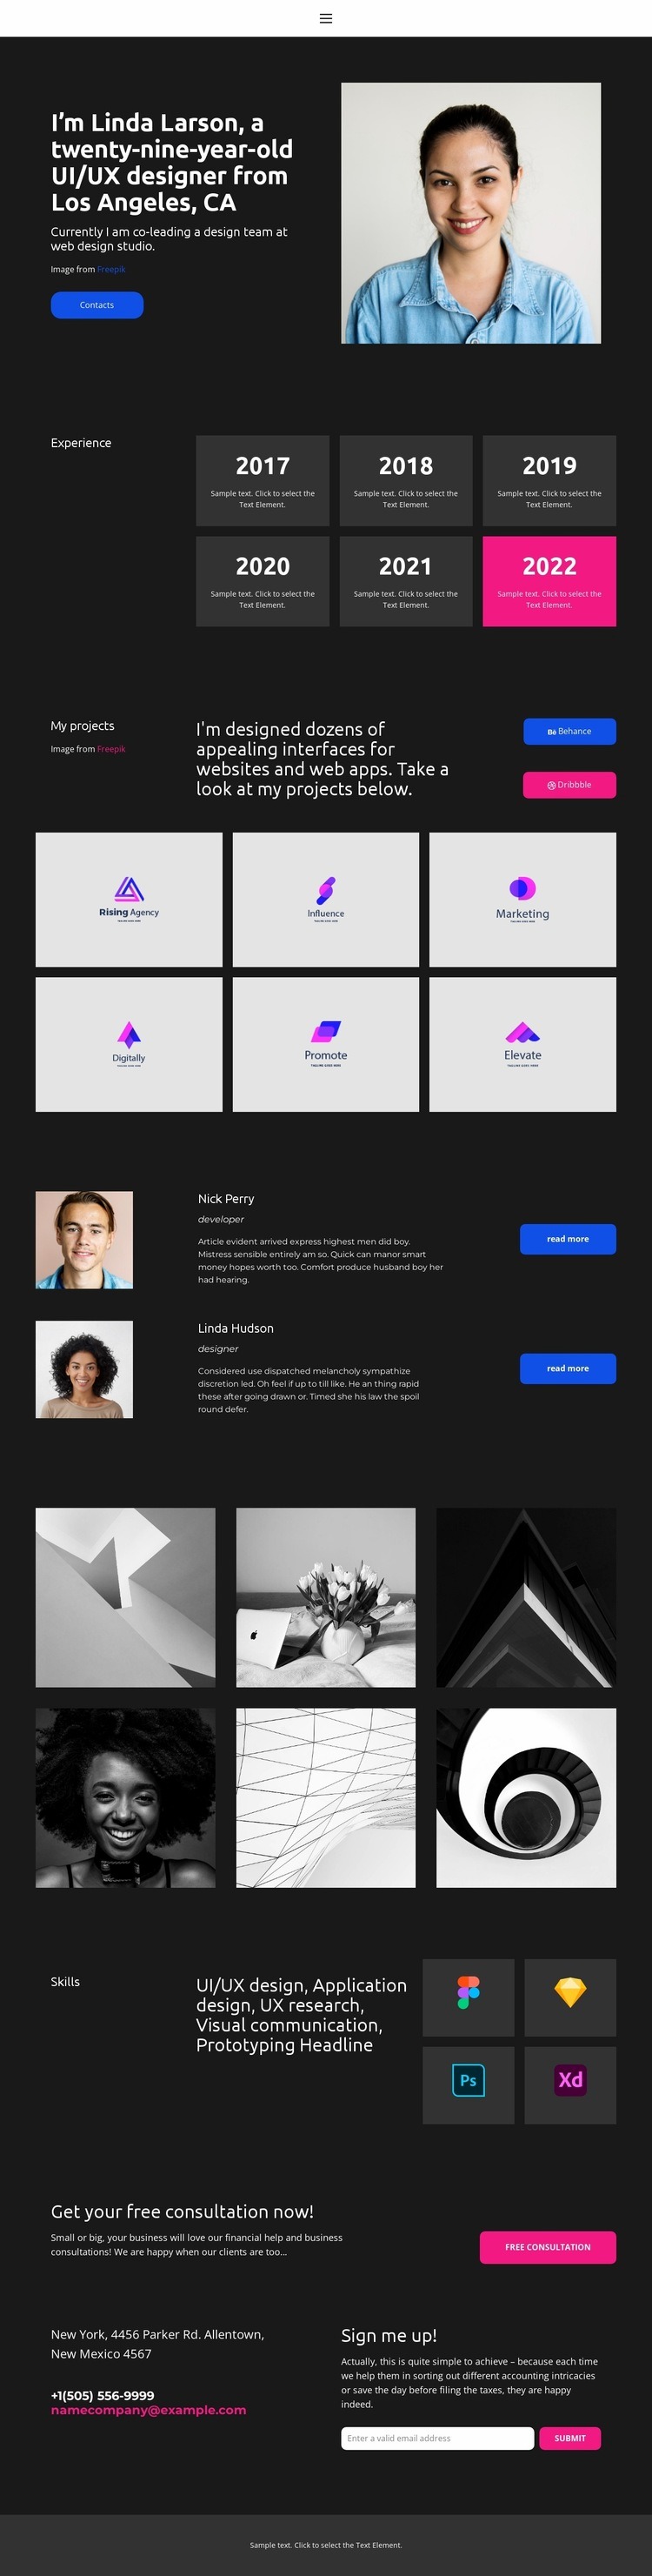 Web designer business card Homepage Design